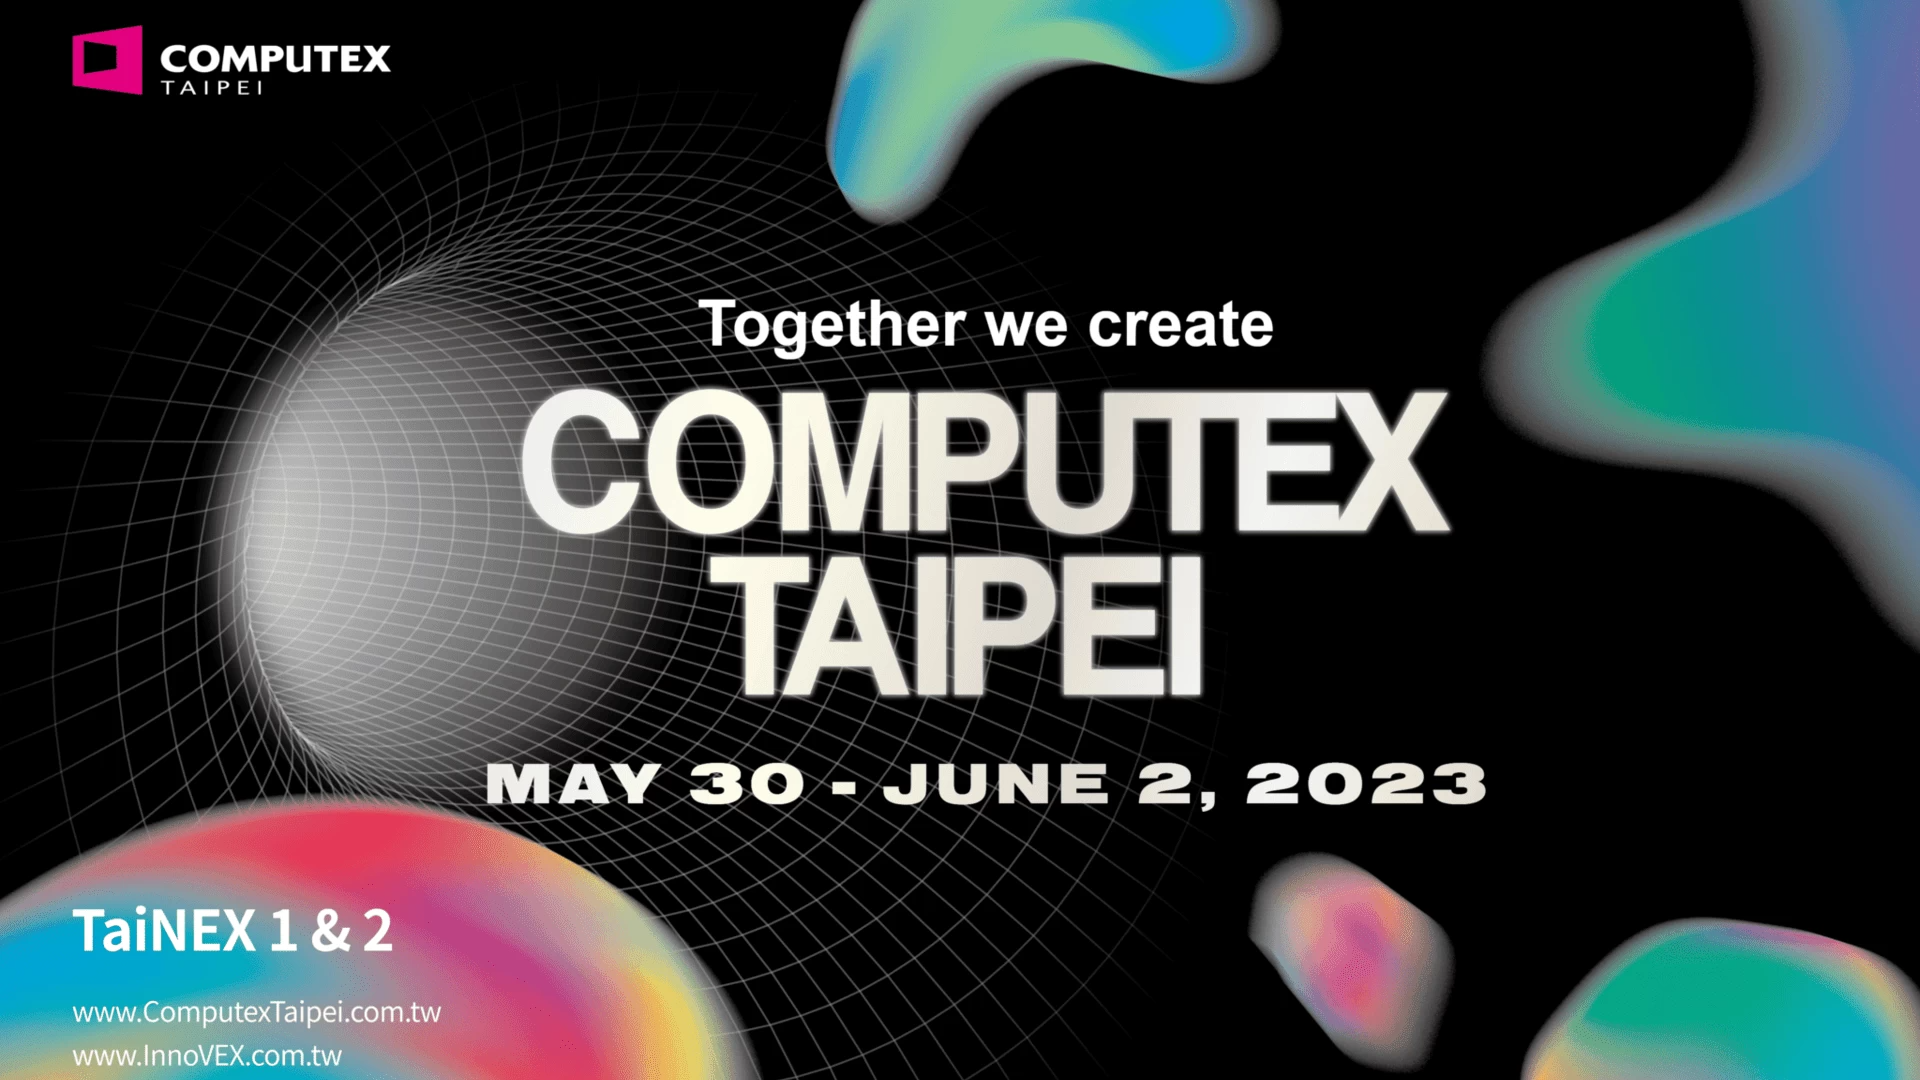 كيفية مشاهدة حدث Computex 2023 من إنفيديا وماذا تتوقع